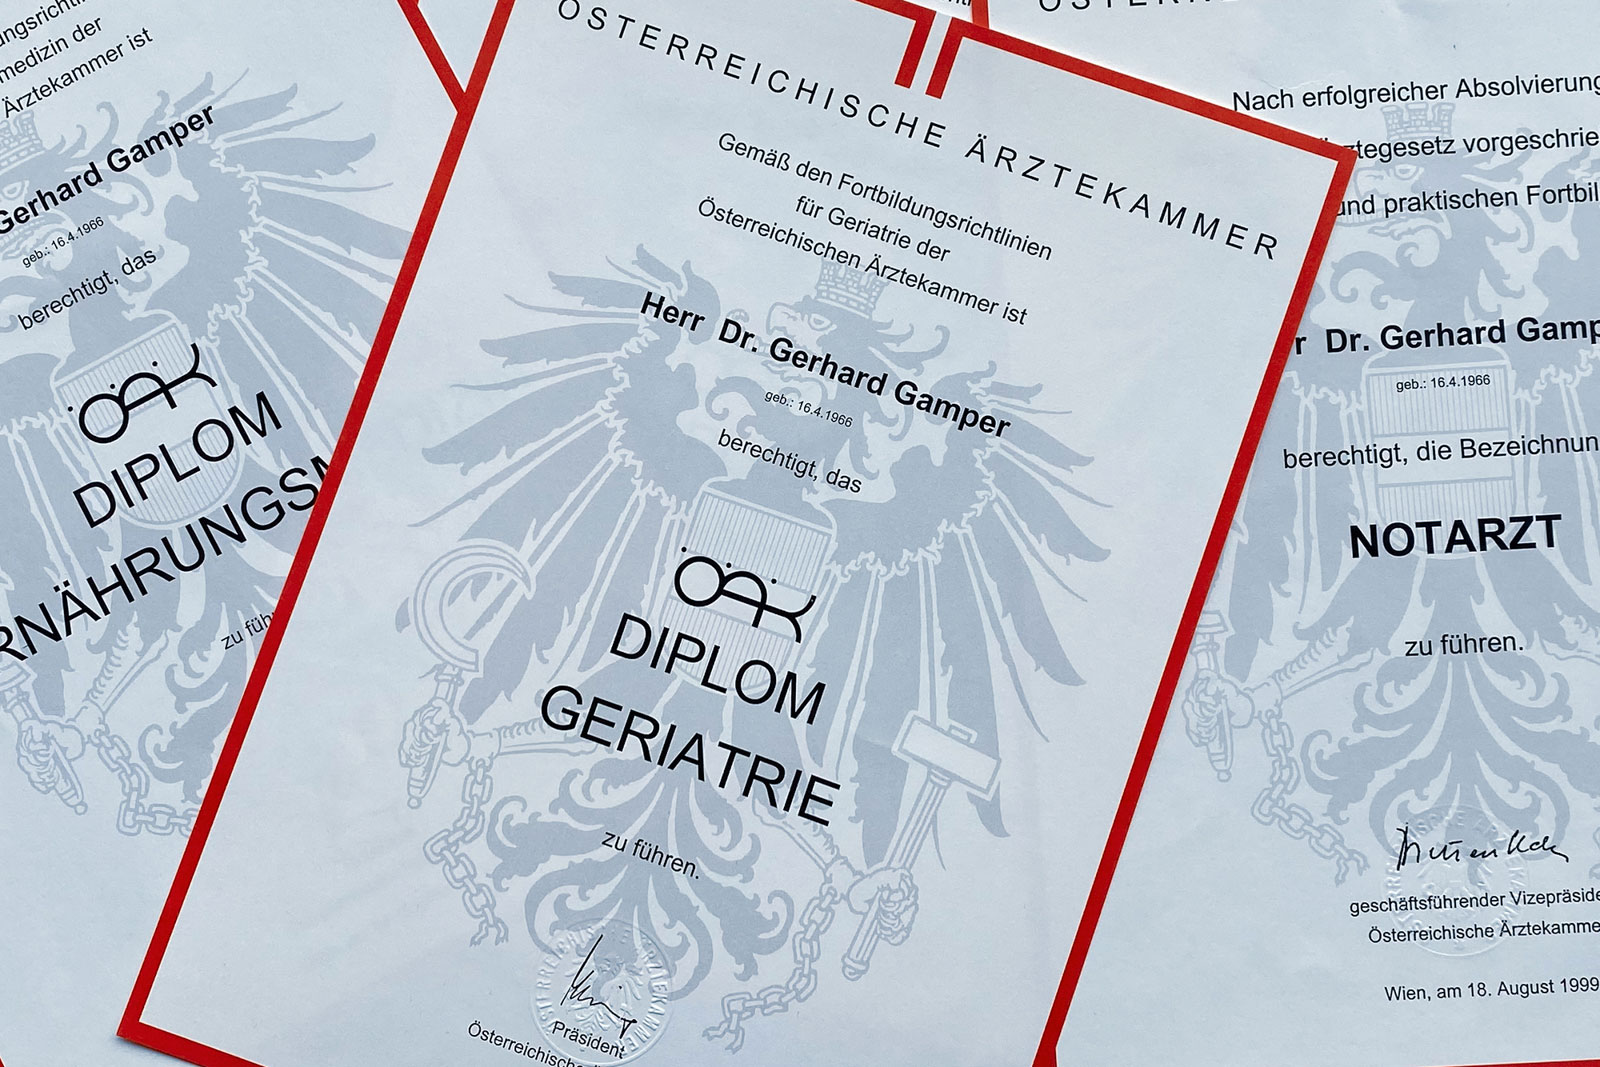 Abbildung der ÖAK Diplome von Dr.Gerhard.Gamper